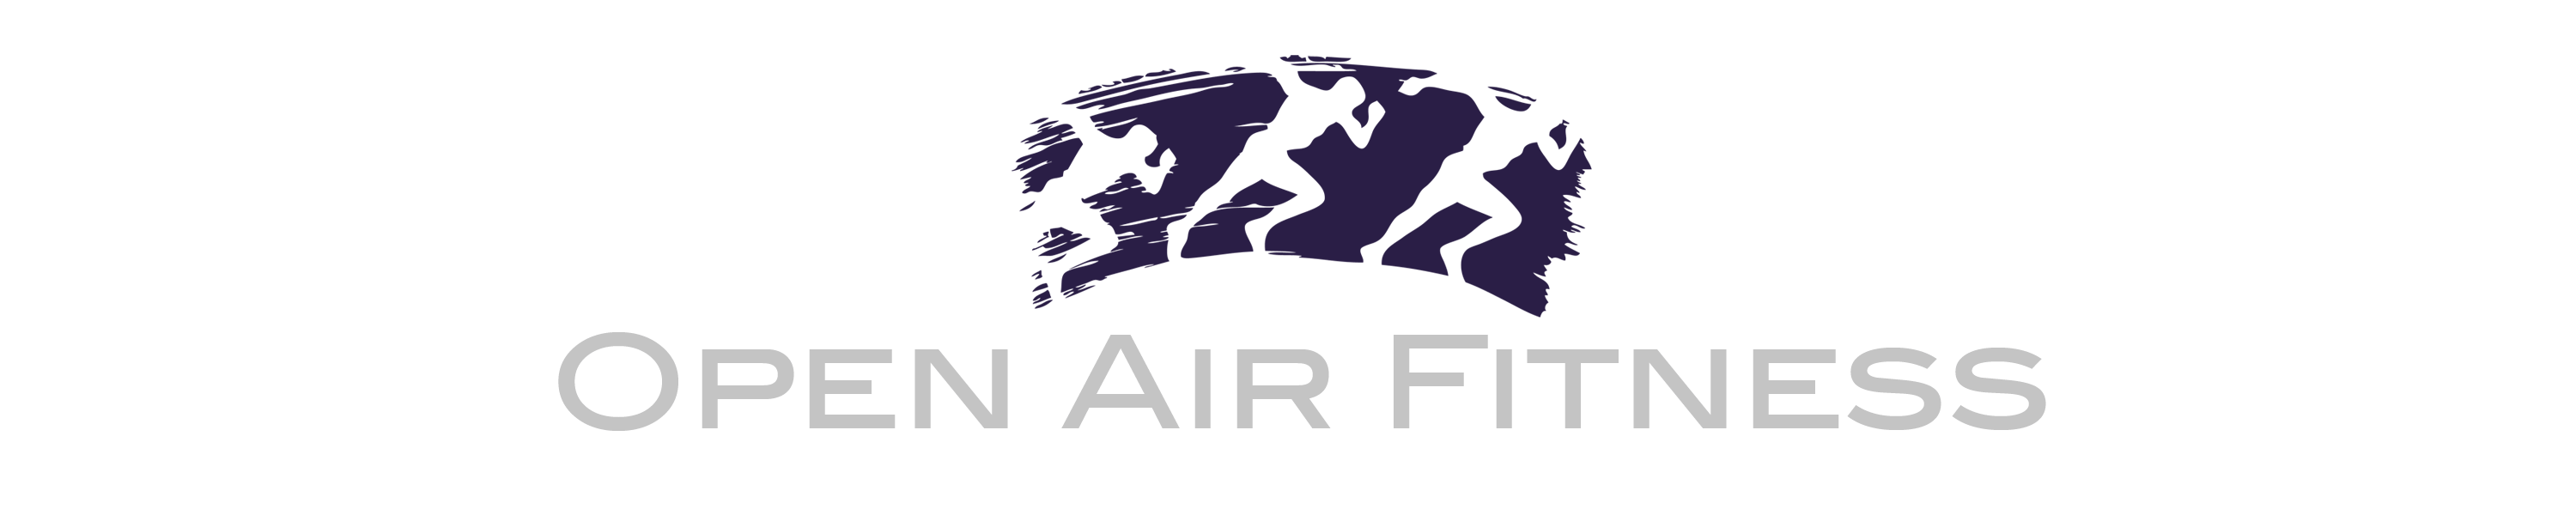 Fitnesstrainer Logo - Trainer. Open Air Fitness